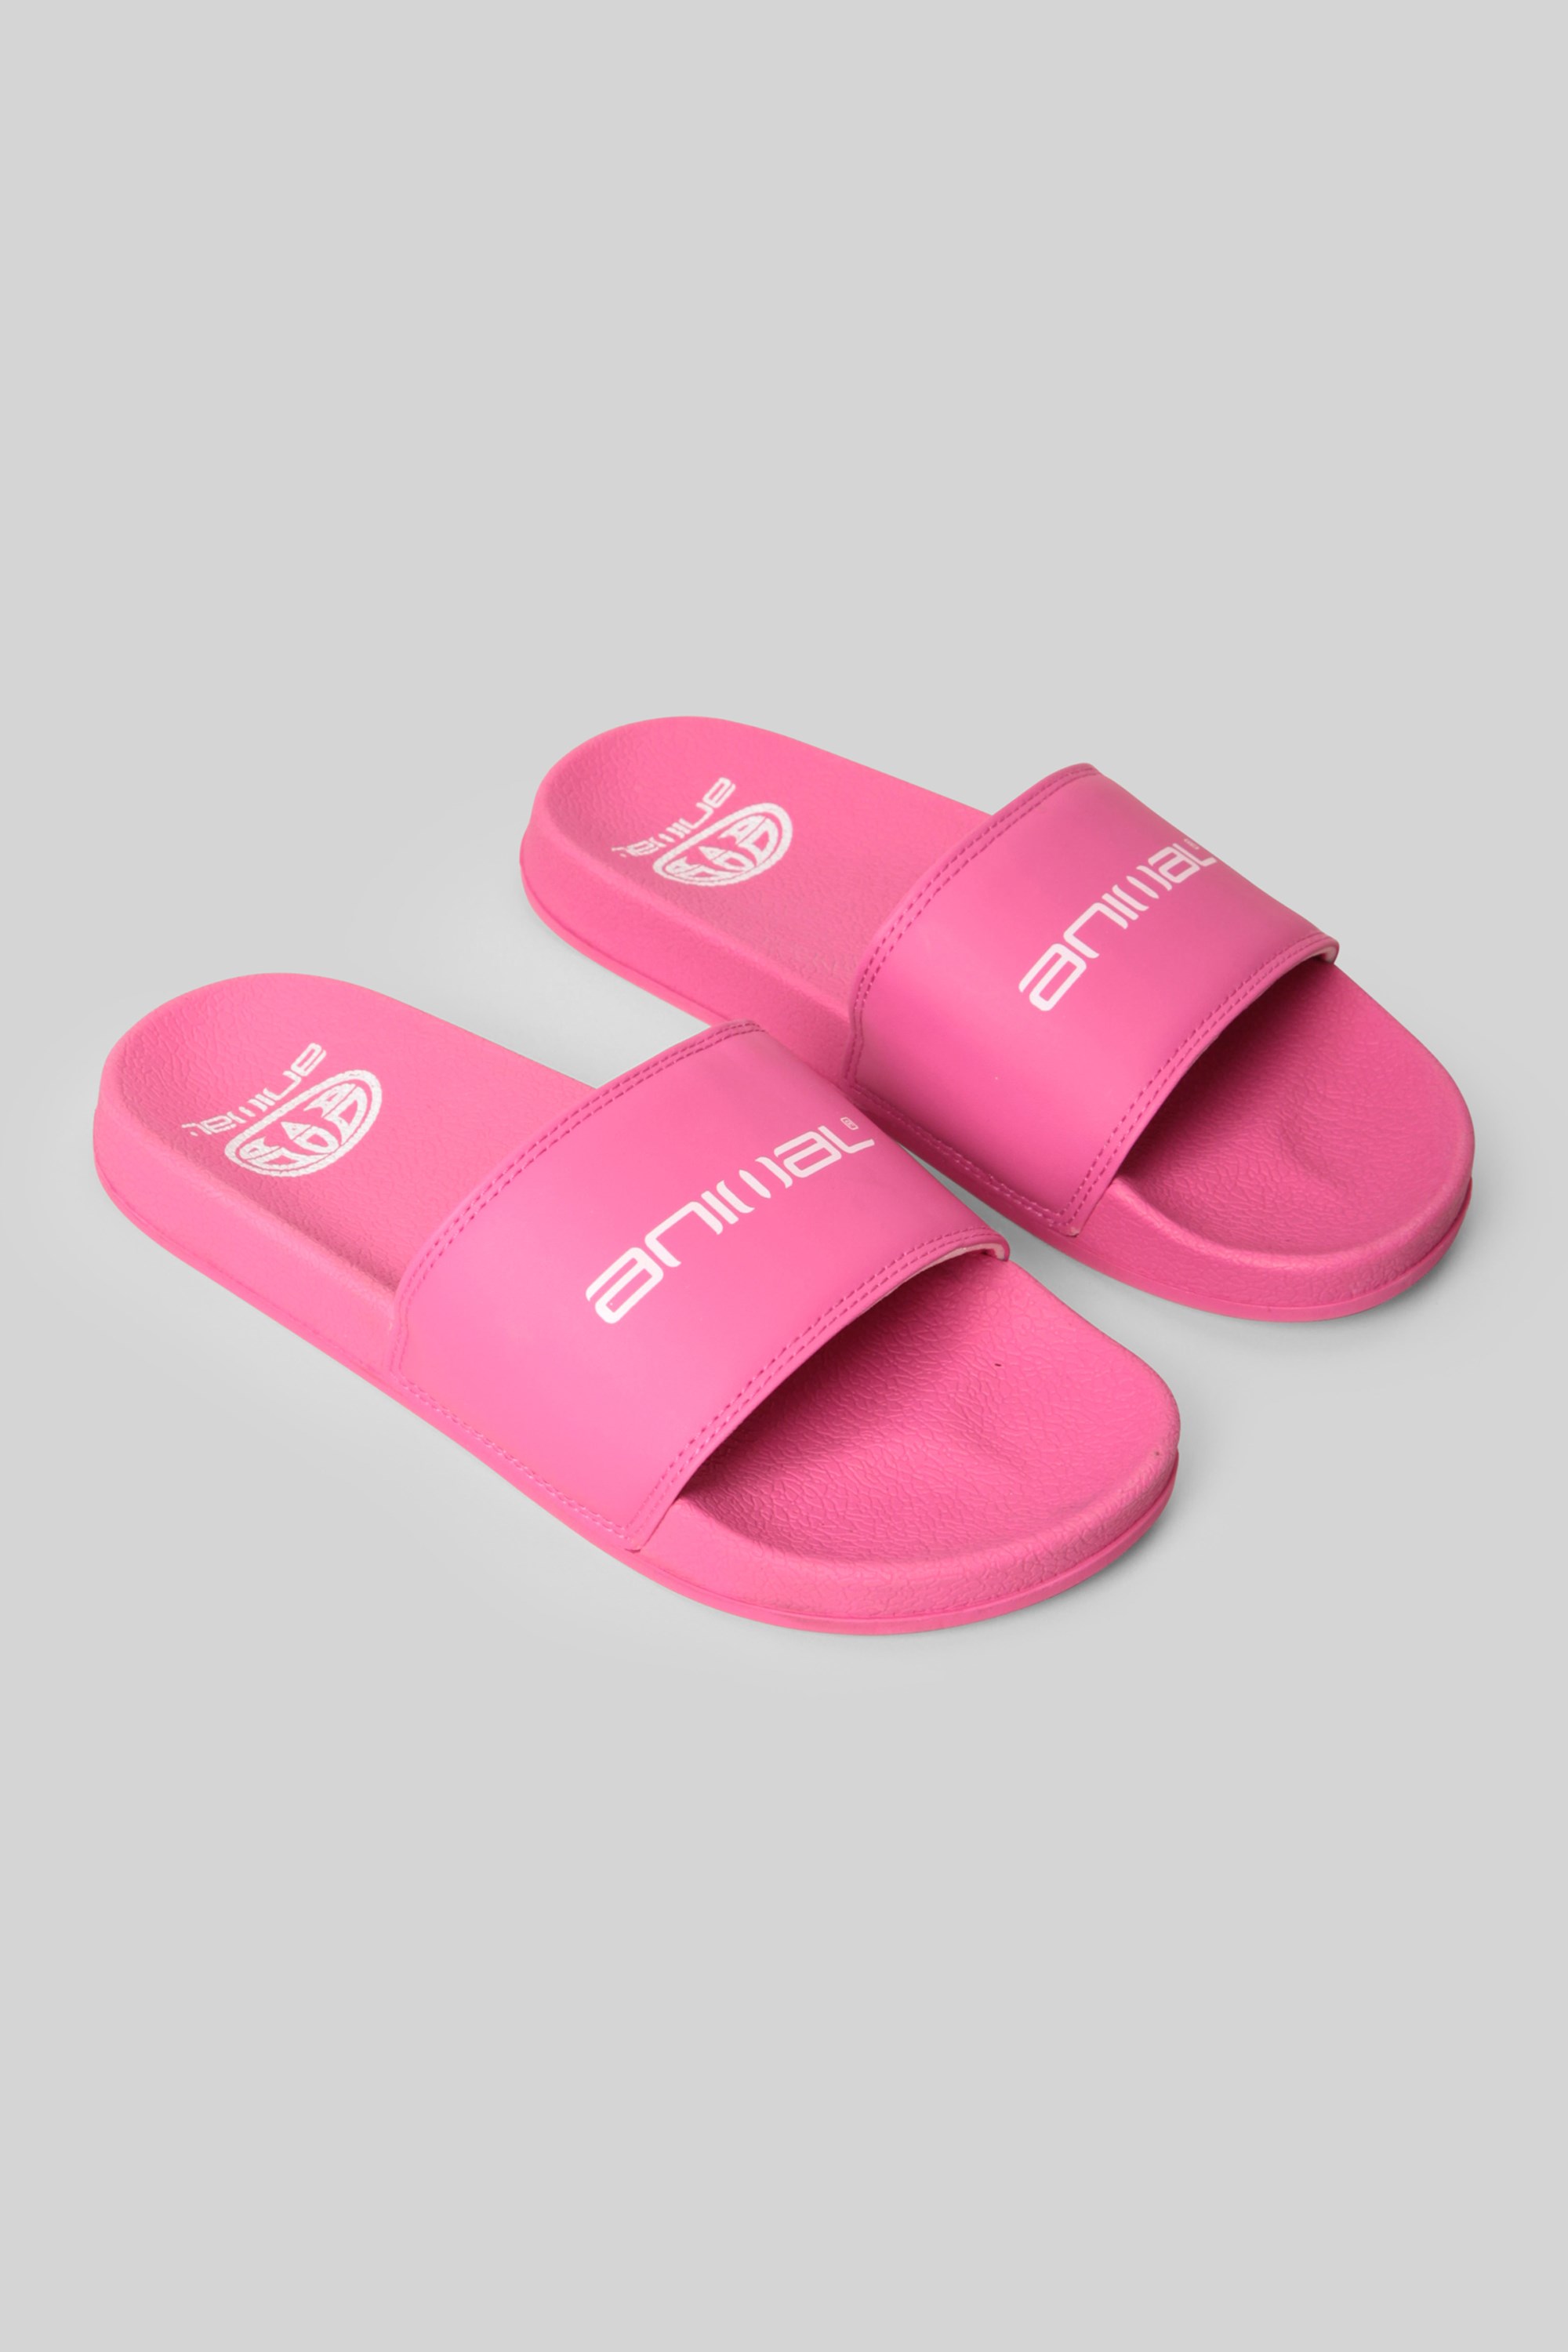 Slidie Kids Graphic Sliders - Pink